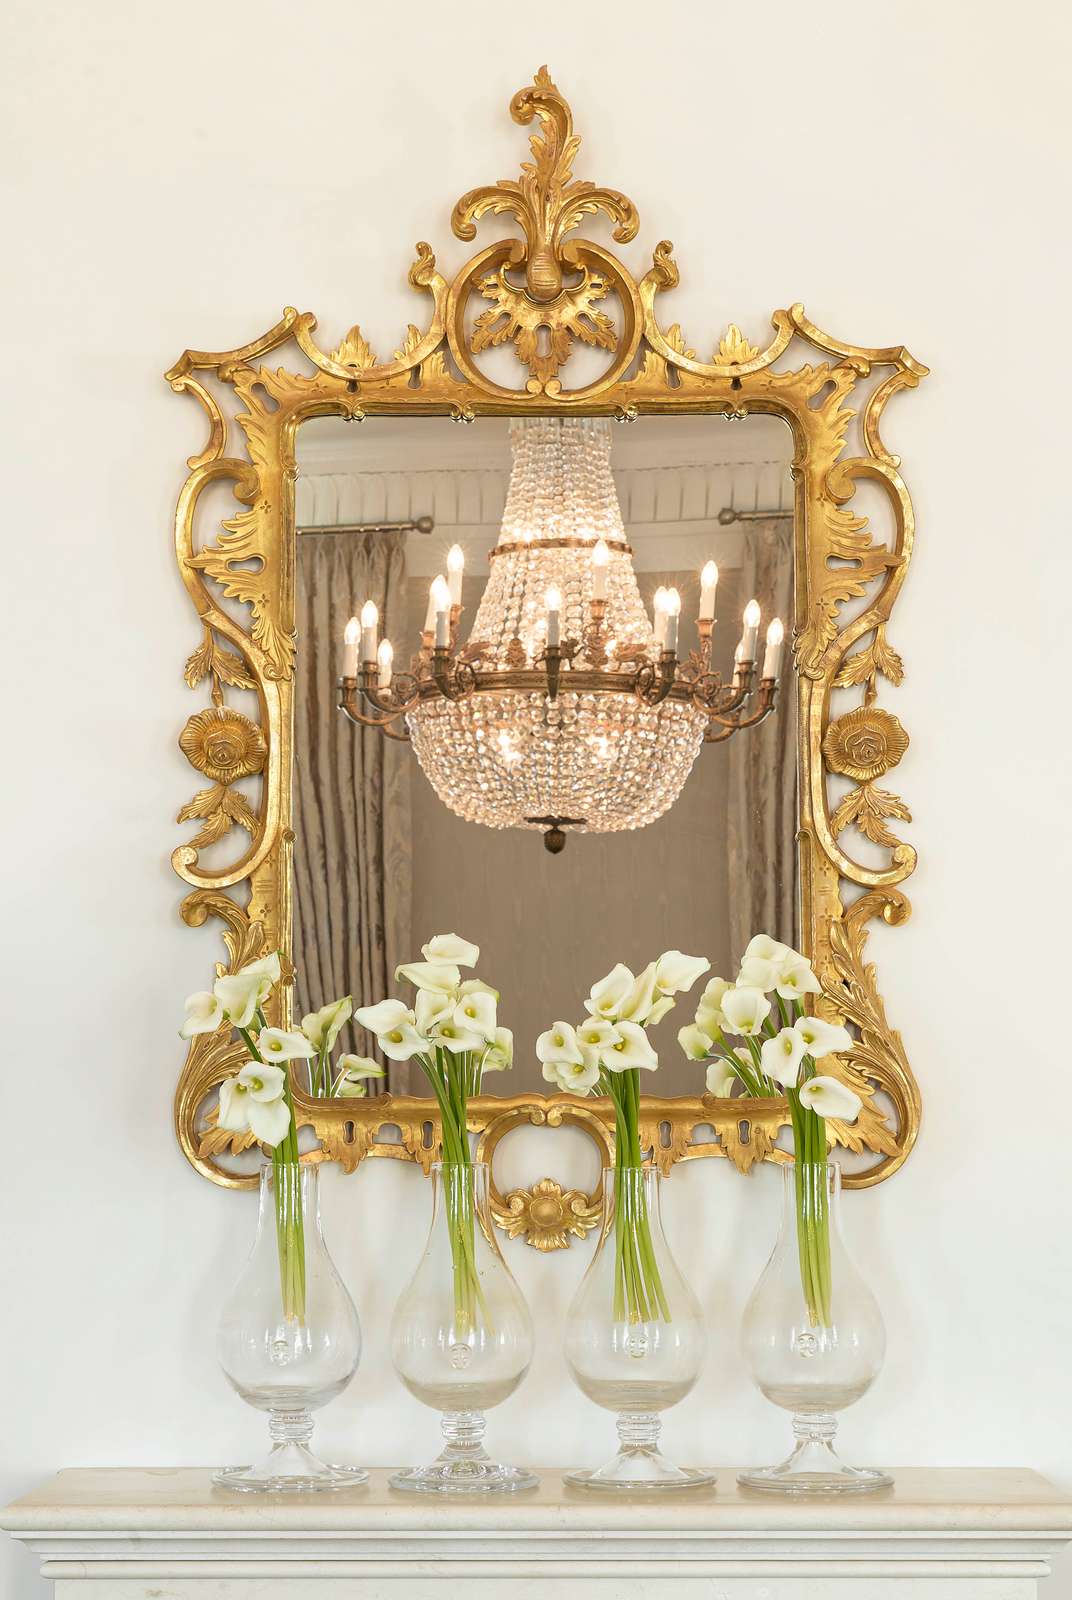 Mirror & flowers Royal Suite